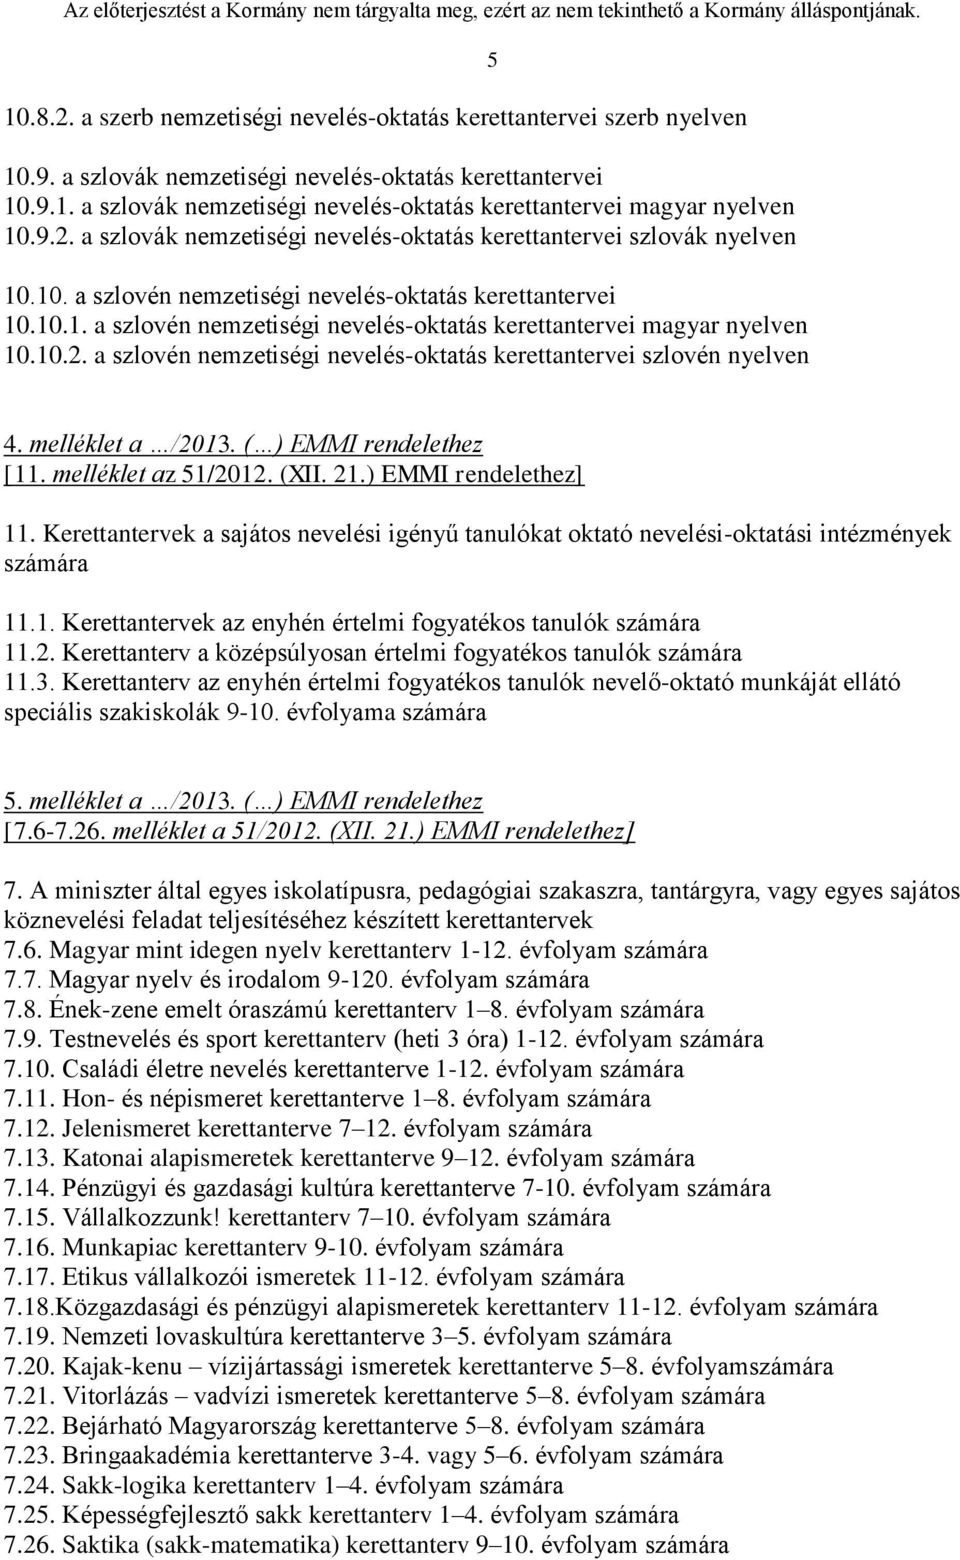 10.2. a szlovén nemzetiségi nevelés-oktatás kerettantervei szlovén nyelven 5 4. melléklet a /2013. ( ) EMMI rendelethez [11. melléklet az 51/2012. (XII. 21.) EMMI rendelethez] 11.